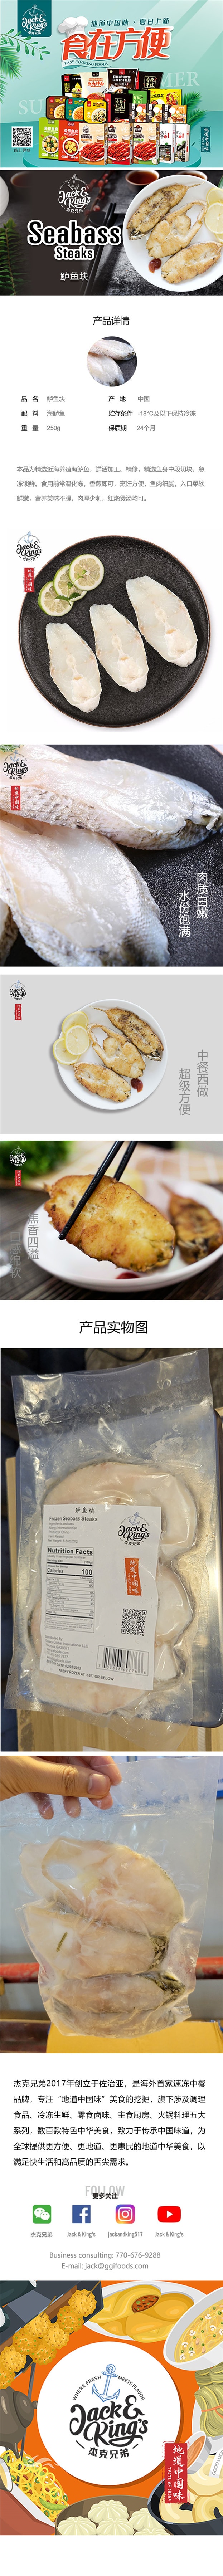 地道中国味 鲈鱼 250g